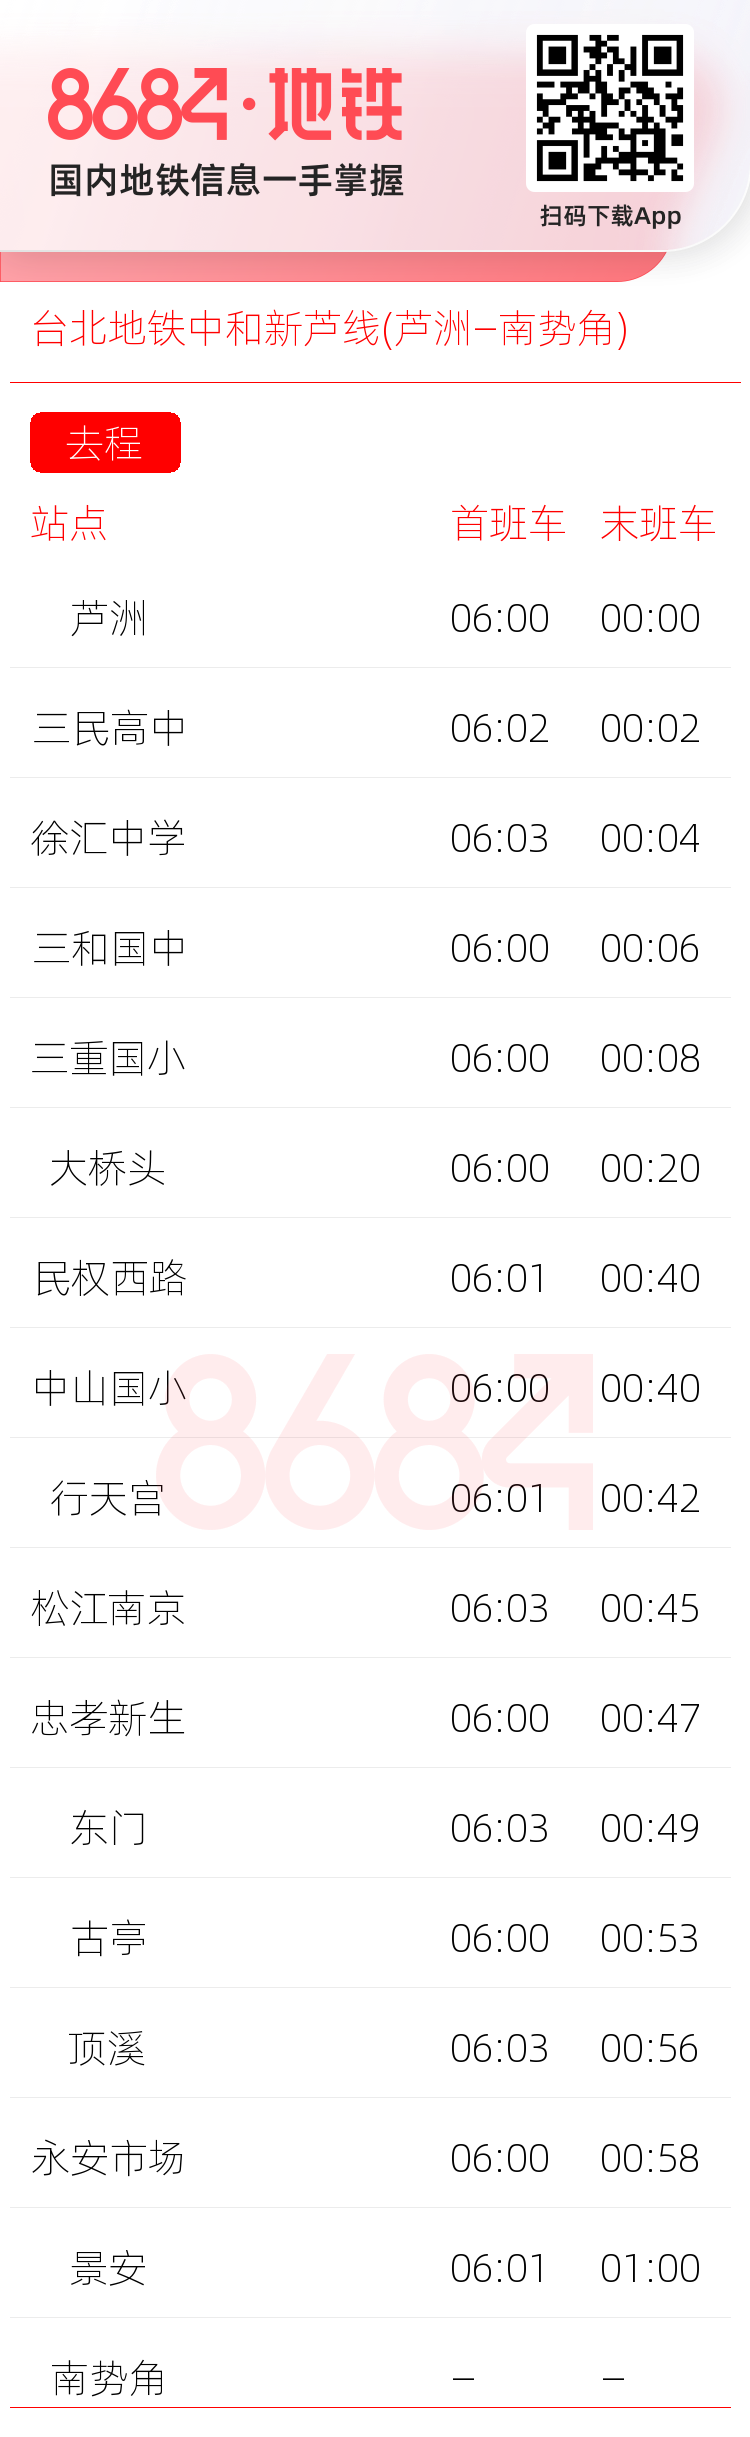 台北地铁中和新芦线(芦洲—南势角)运营时间表